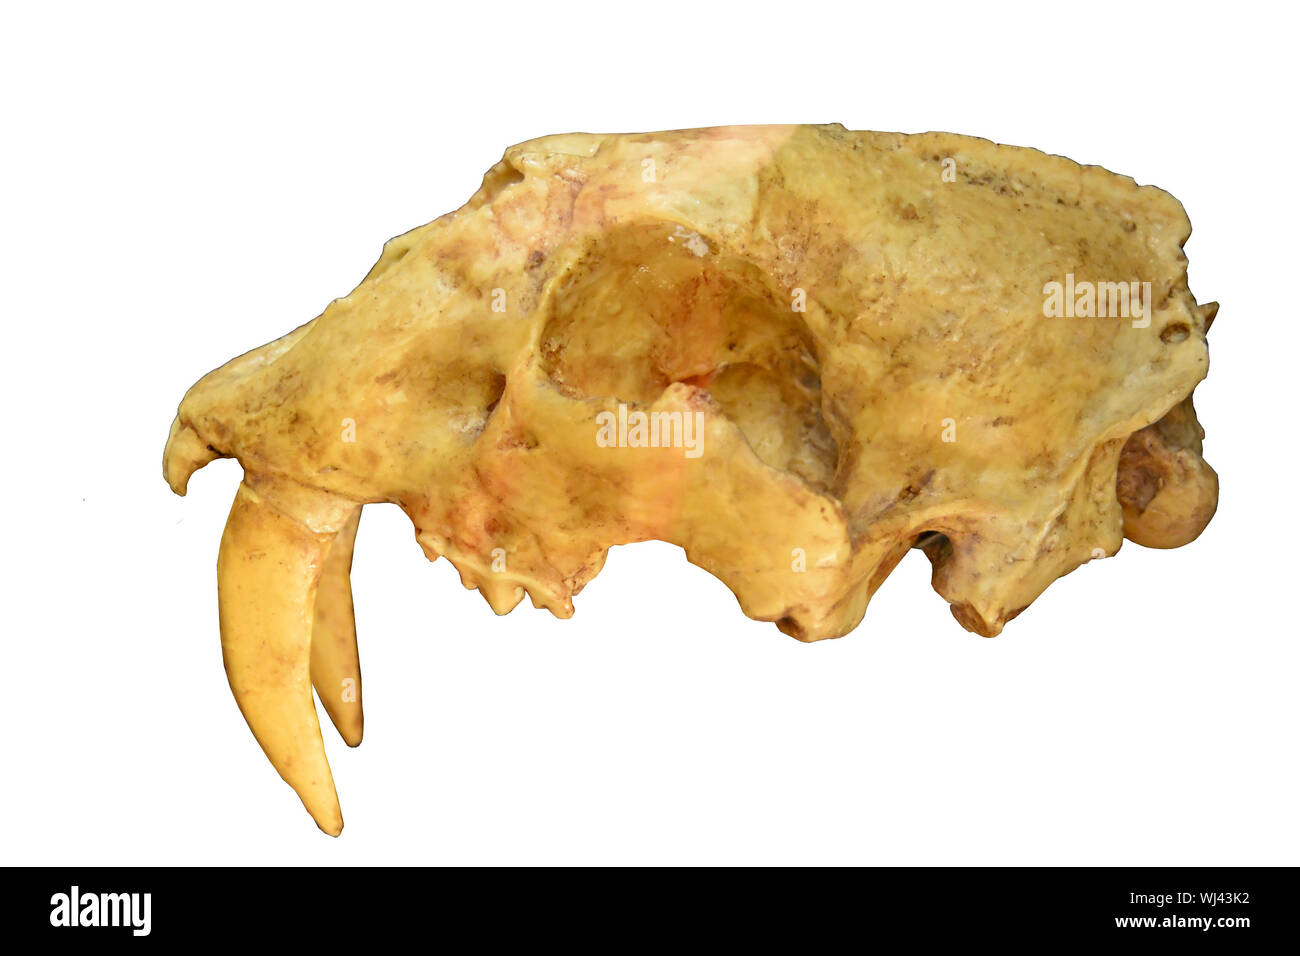 Cráneo del tigre dientes de sable que muestra enormes dientes caninos, desde la última Edad de Hielo. Aislado en un fondo blanco. Foto de stock